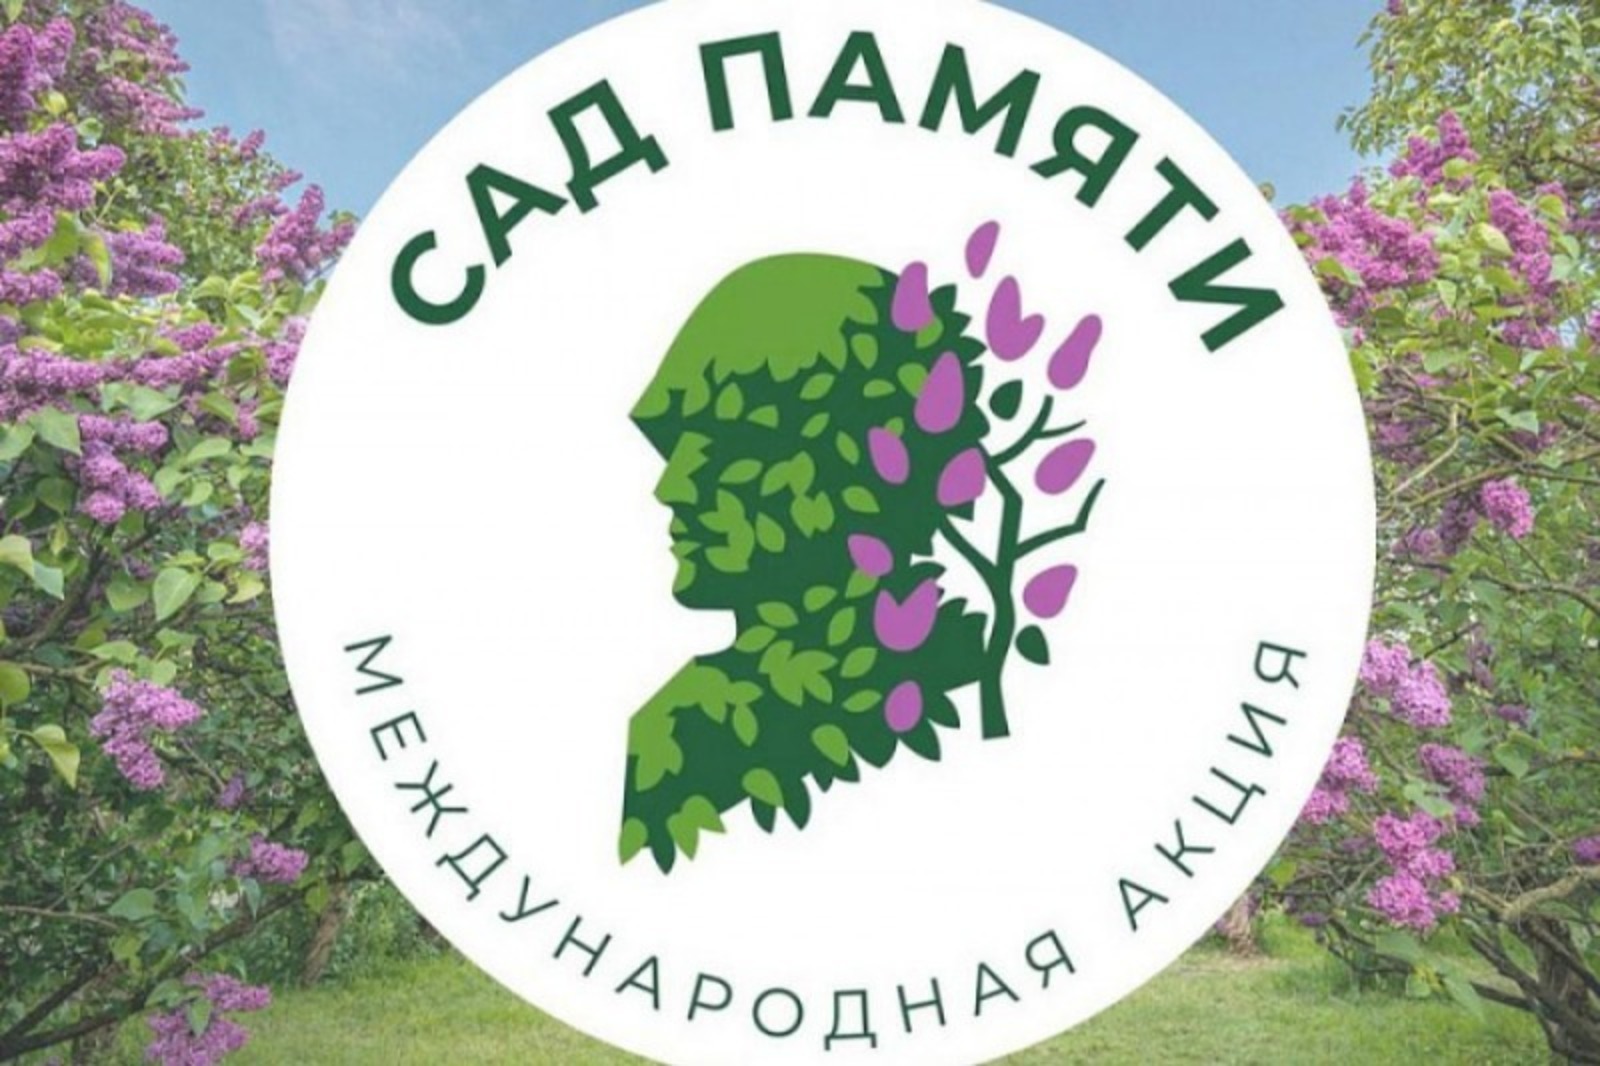 Жители Башкирии высадили 580 тысяч  деревьев  в рамках акции «Сад памяти»